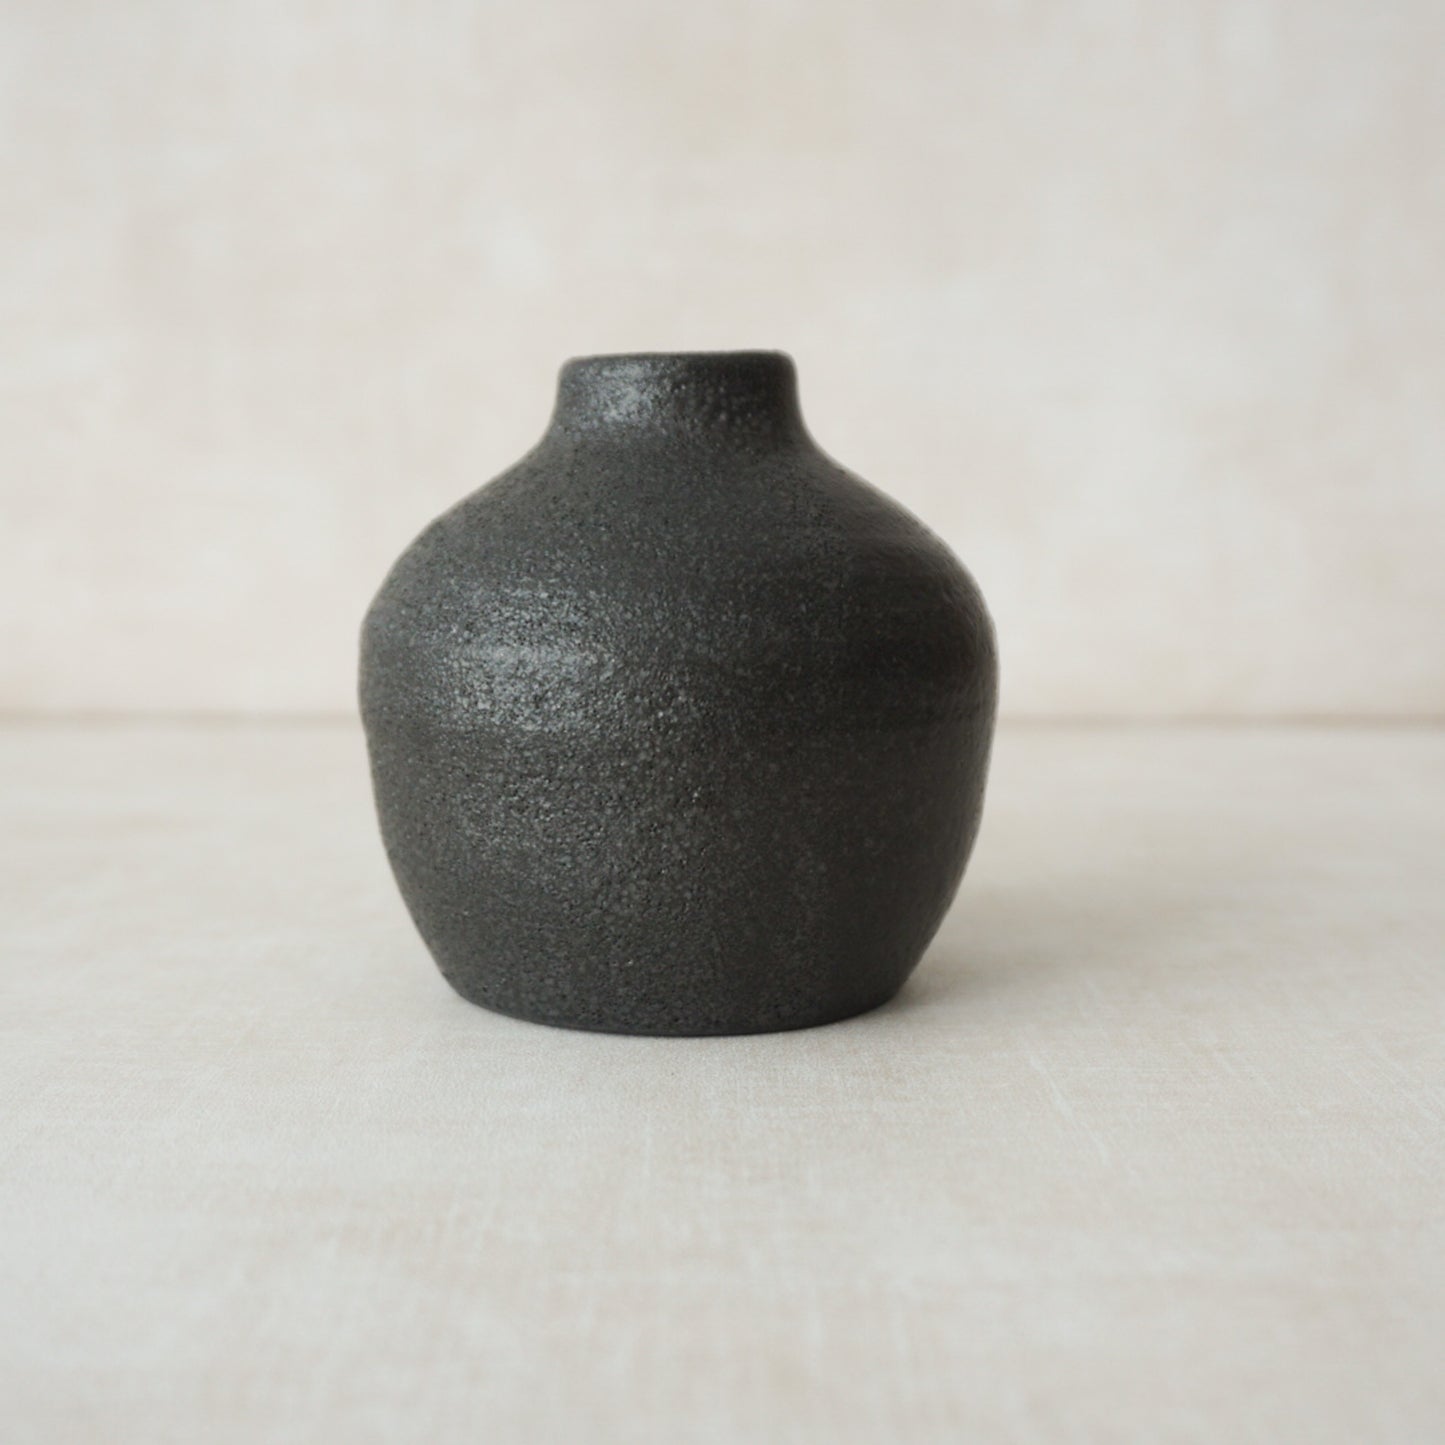 Basalt Small Round Vase